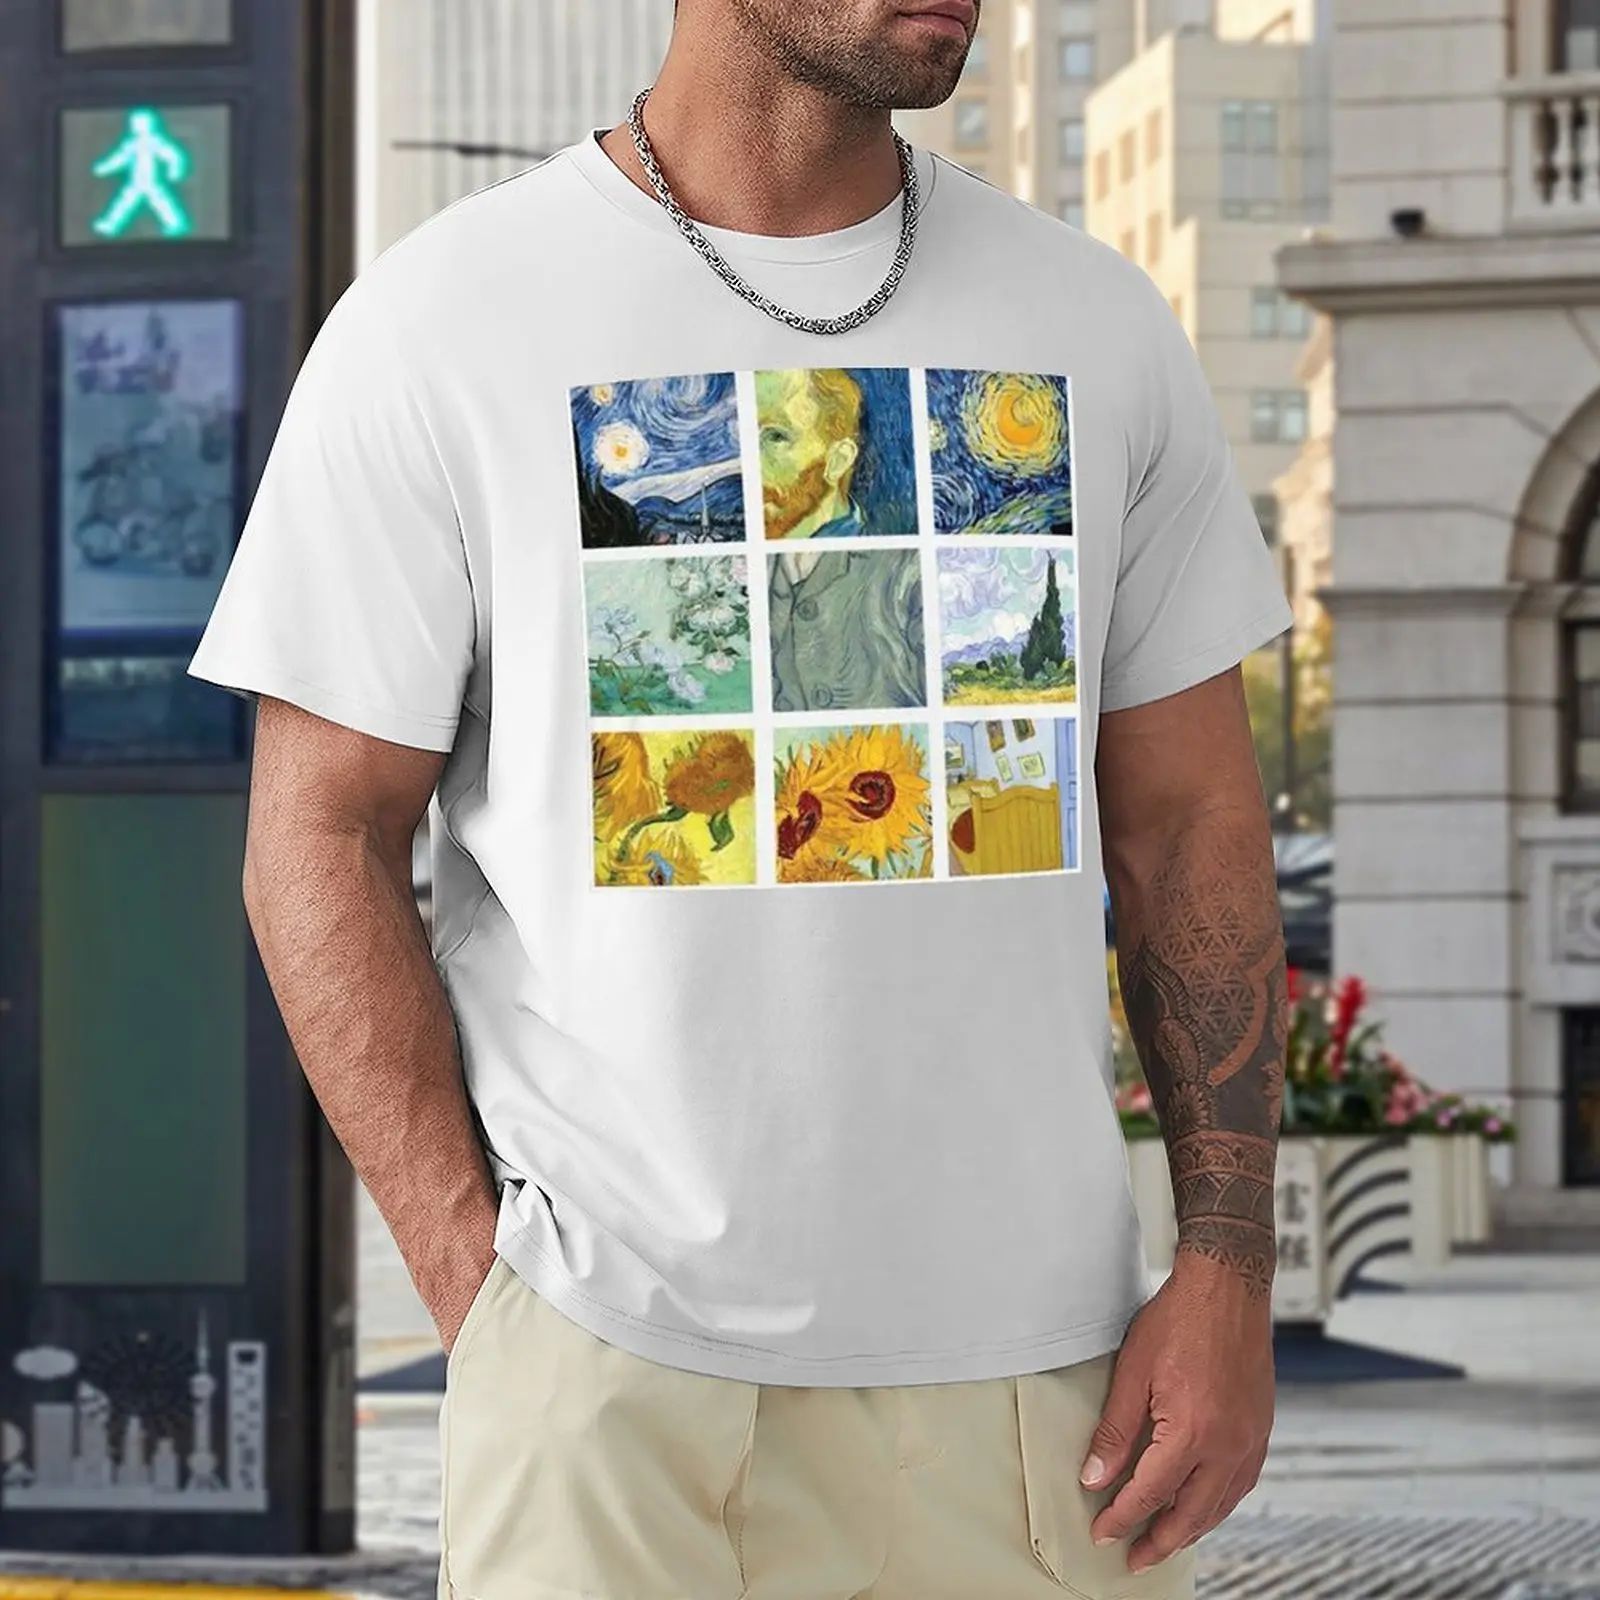 Футболка с рисунком Винсента Ван Гога в сетку, забавная футболка, корейская мода, мужские футболки большого и высокого роста Изображение 4